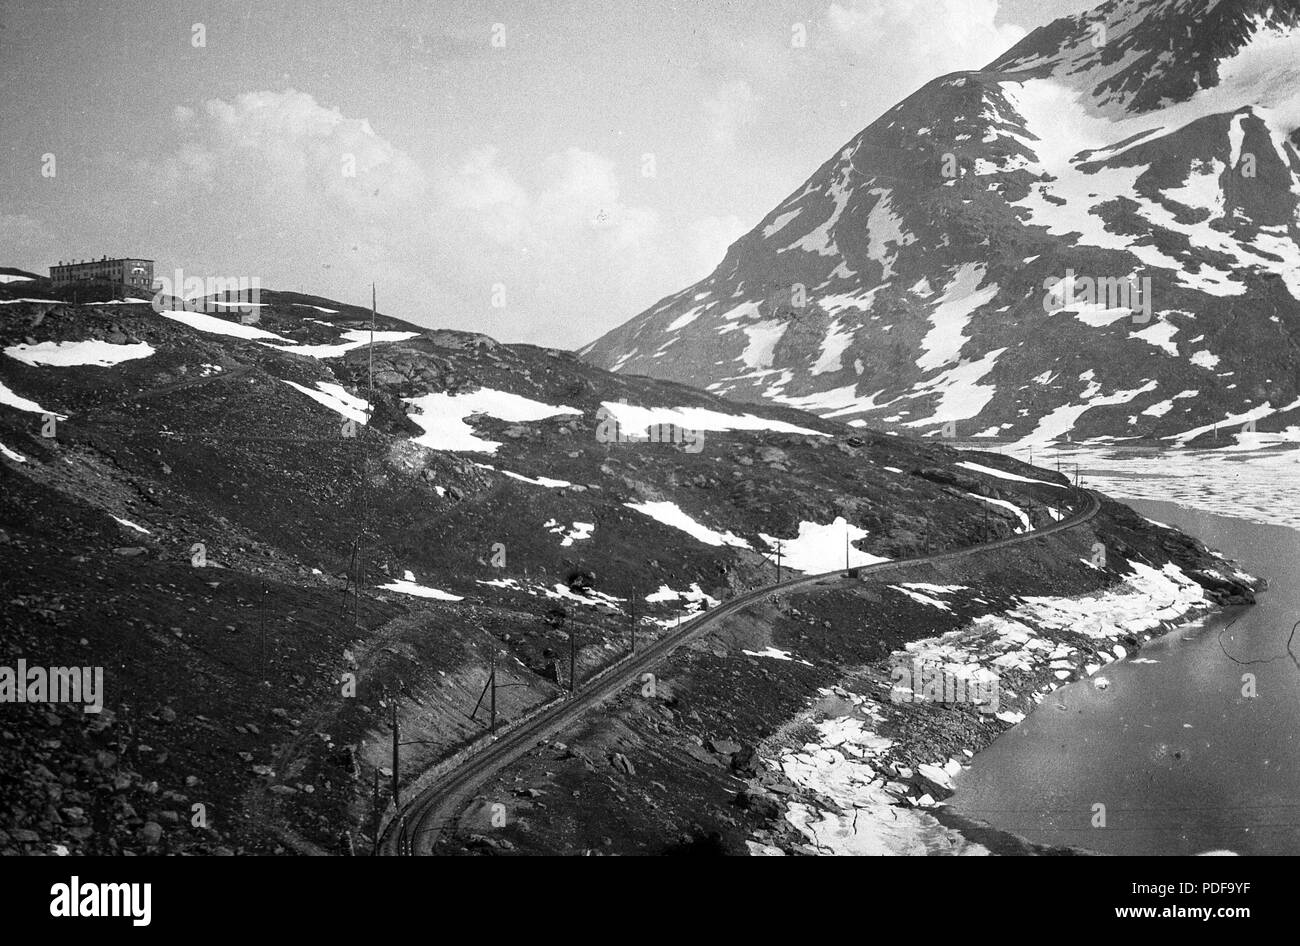 78 Bernina-hágó un hasonló nevű magashegyi vendégfogadóval és vasúttal. Jobbra un Lago Bianco mesterséges tó. Fortepan 52880 Foto Stock